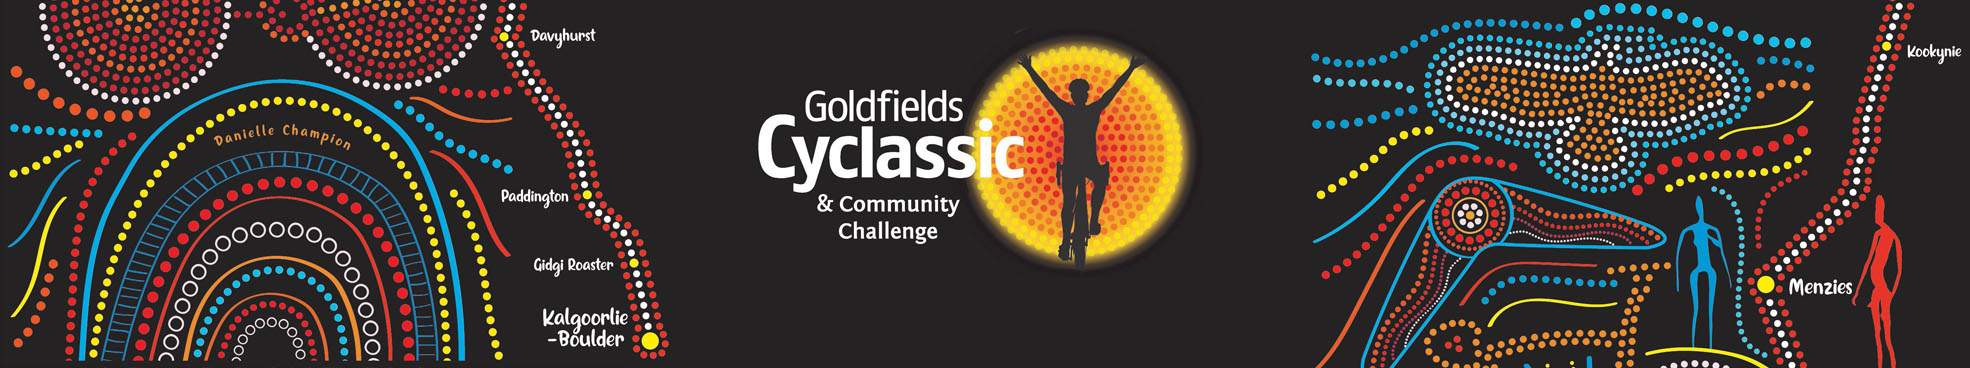 Goldfields Cyclassic